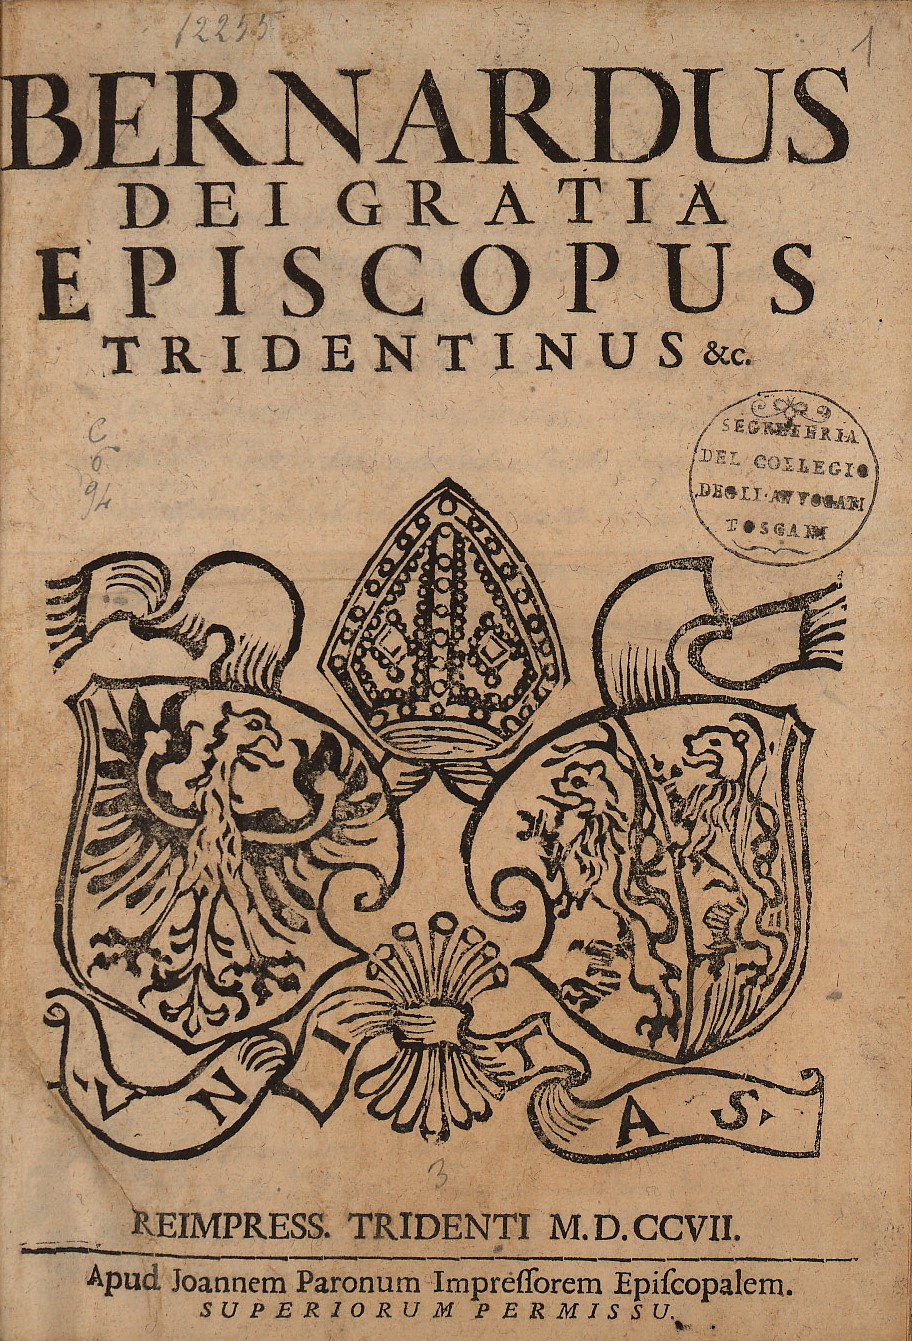 Bernardus Dei gratia episcopus Tridentinus &c.